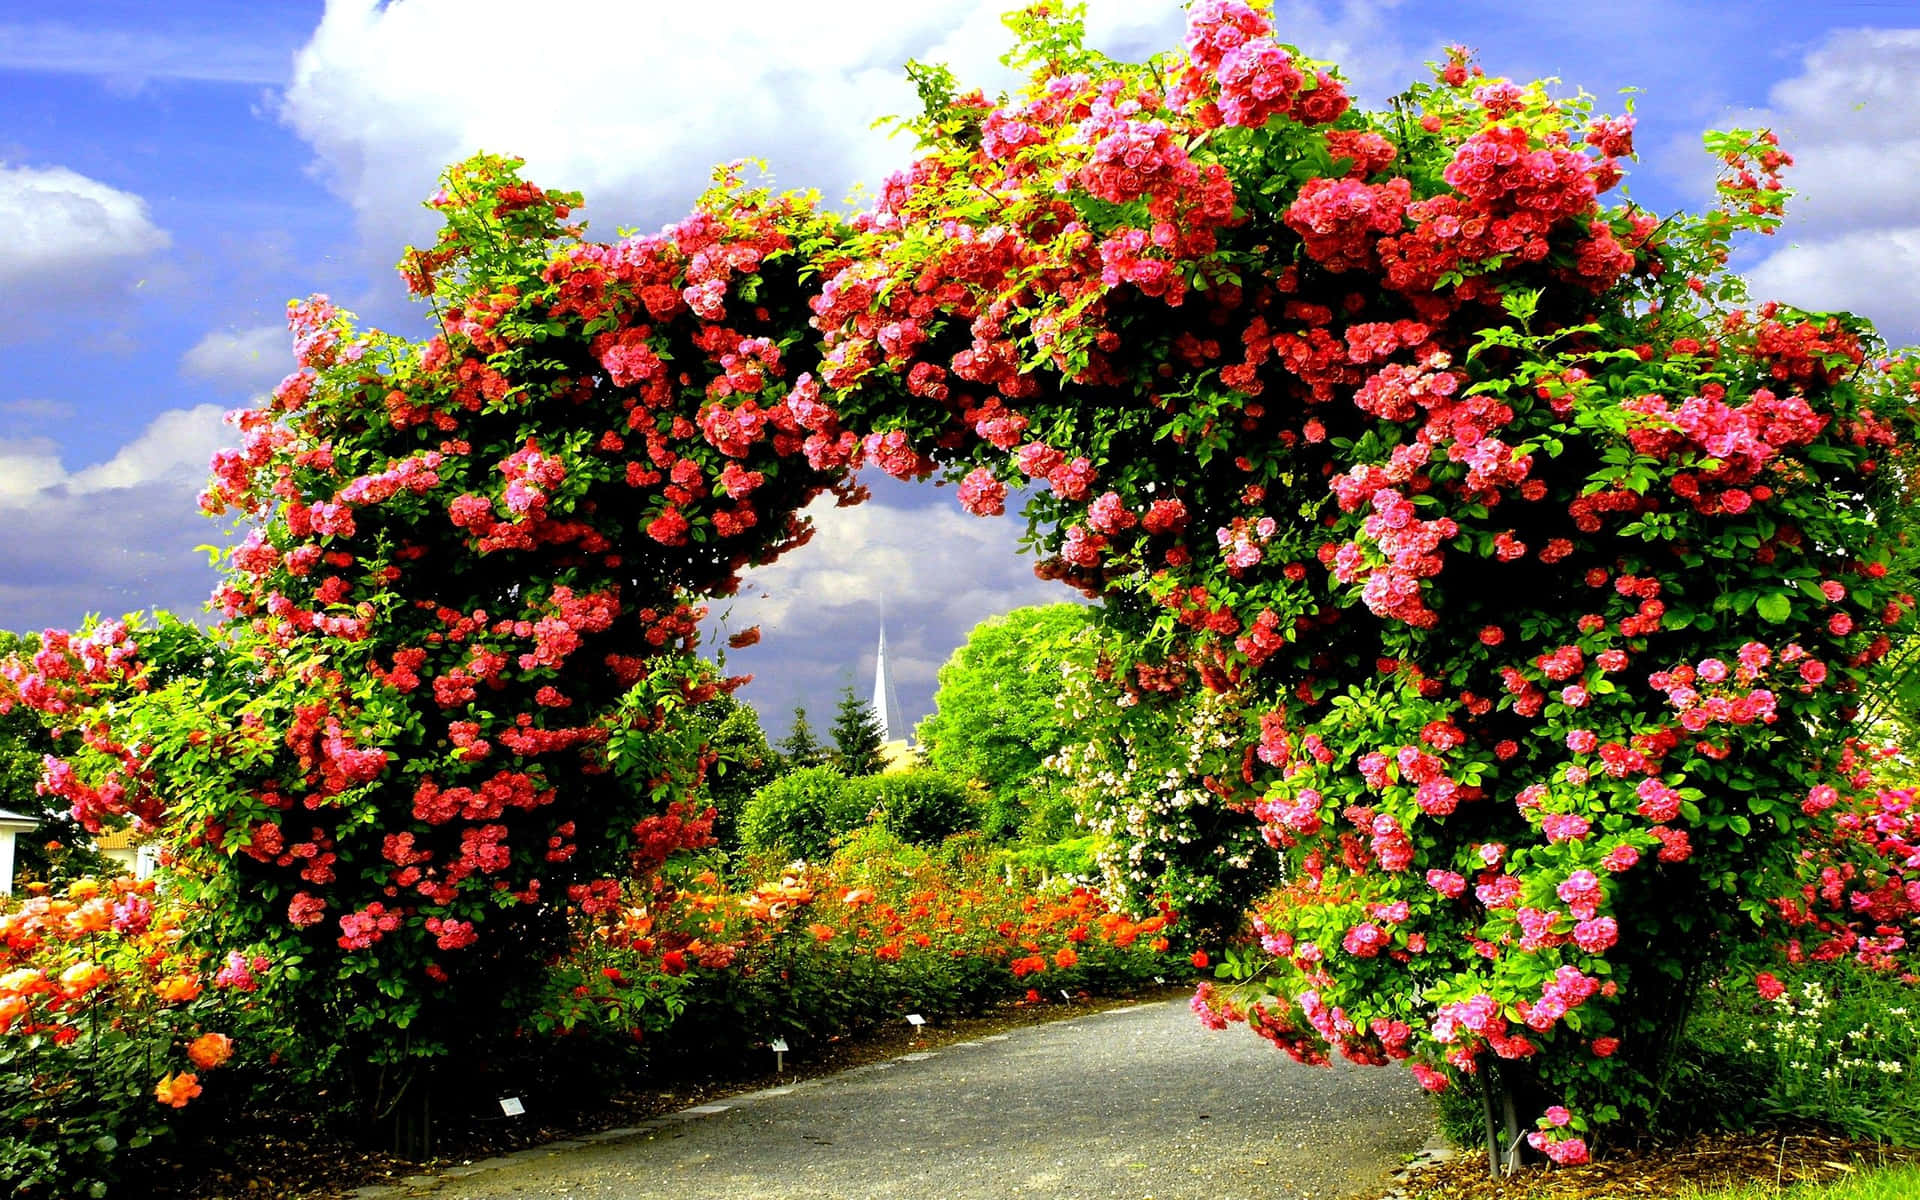 Rosedel Giardino Rosa Su Un'immagine Bellissima Di Un Arco Nel Giardino.